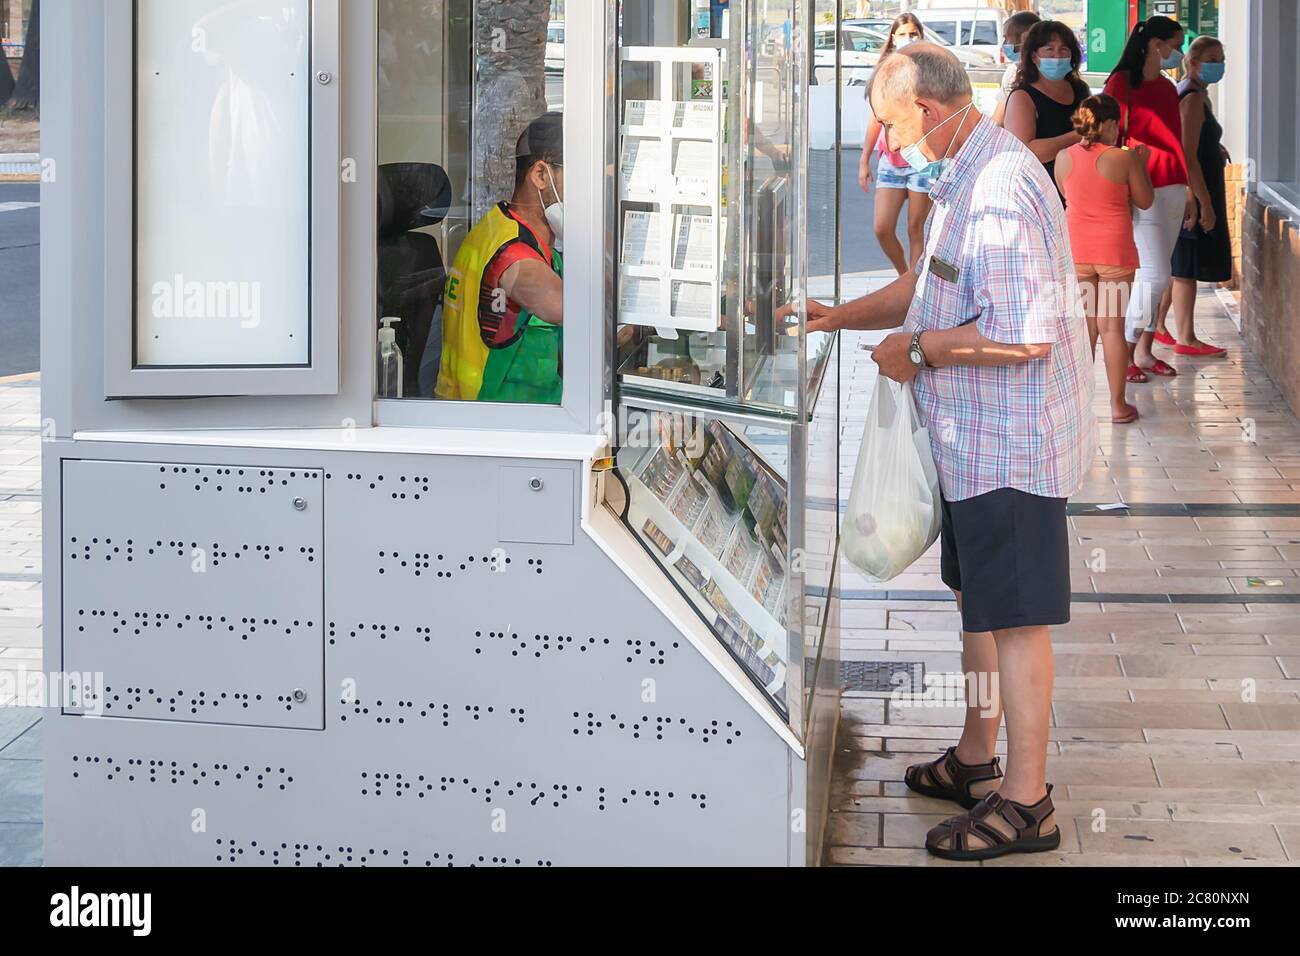 Punta Umbria, Huelva, Spagna - 11 luglio 2020: L'uomo in maschera protettiva sta acquistando biglietti per lotteria in un chiosco A Punta Umbria, Andalusia, Spagna Foto Stock